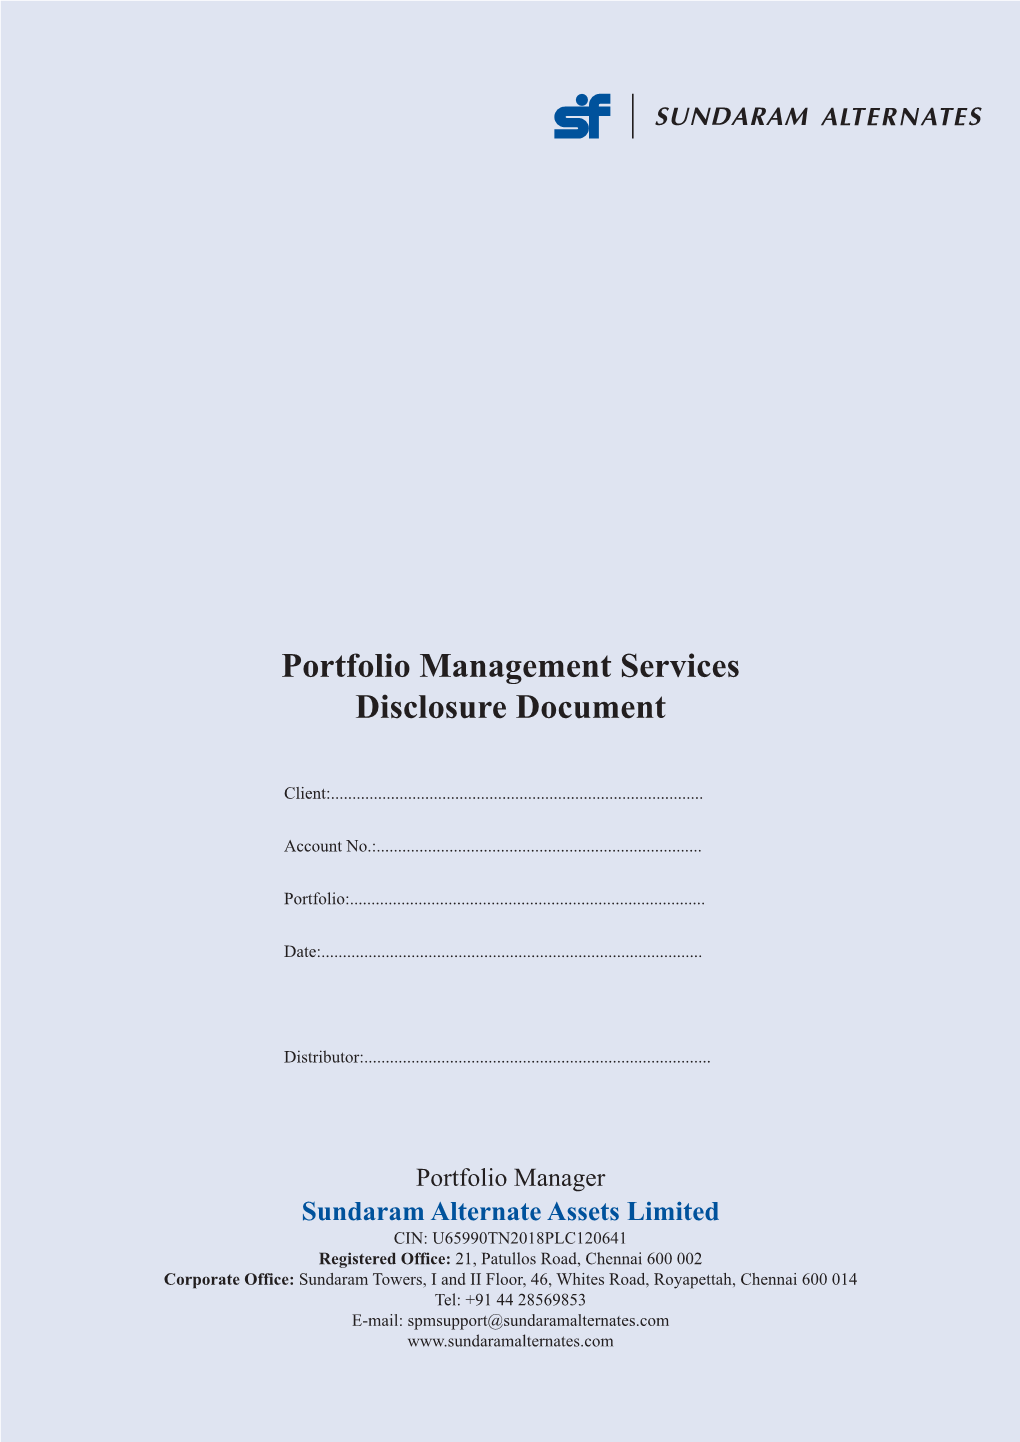 Disclosure Document